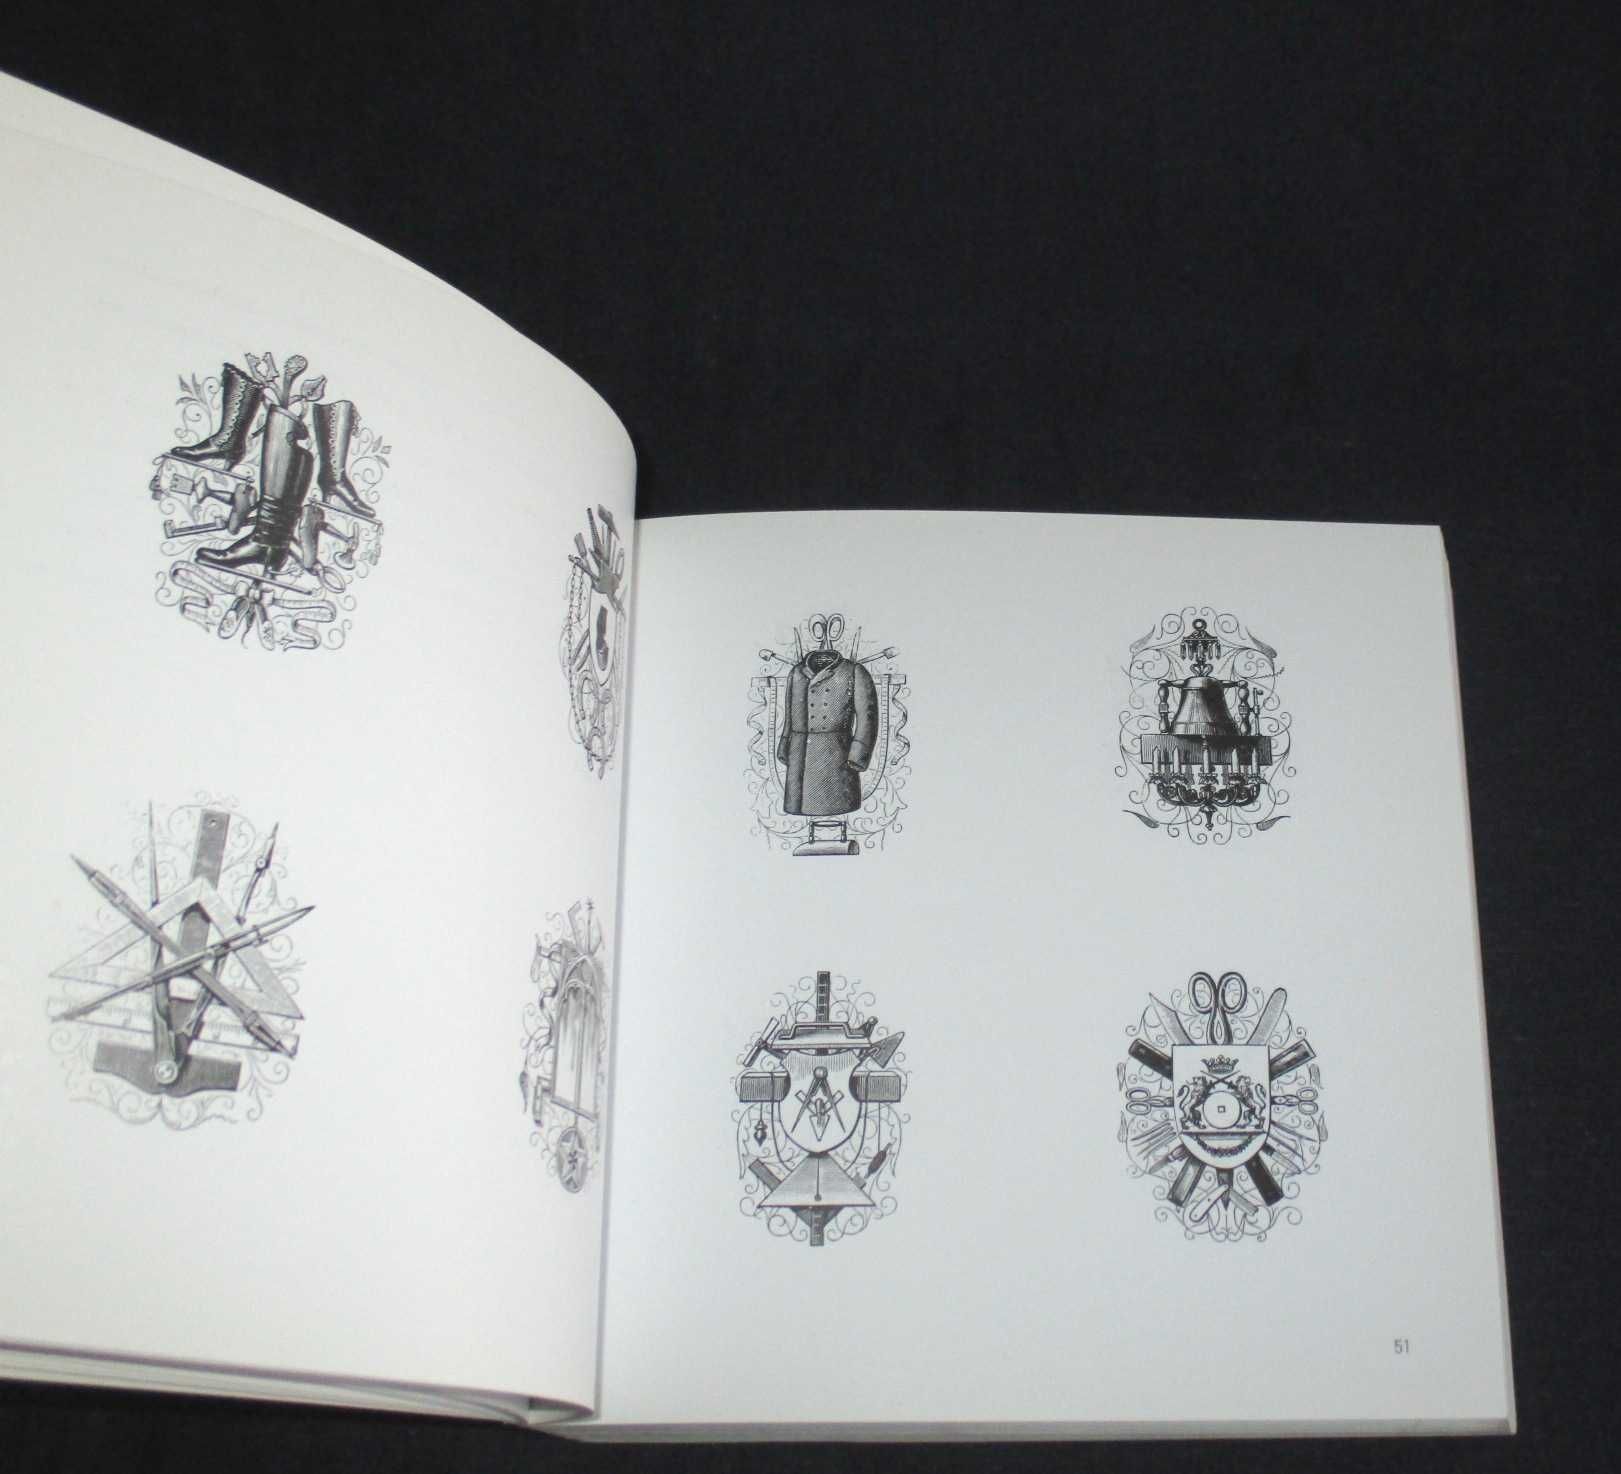 Livro Signos & Símbolos com CD Pepin Press